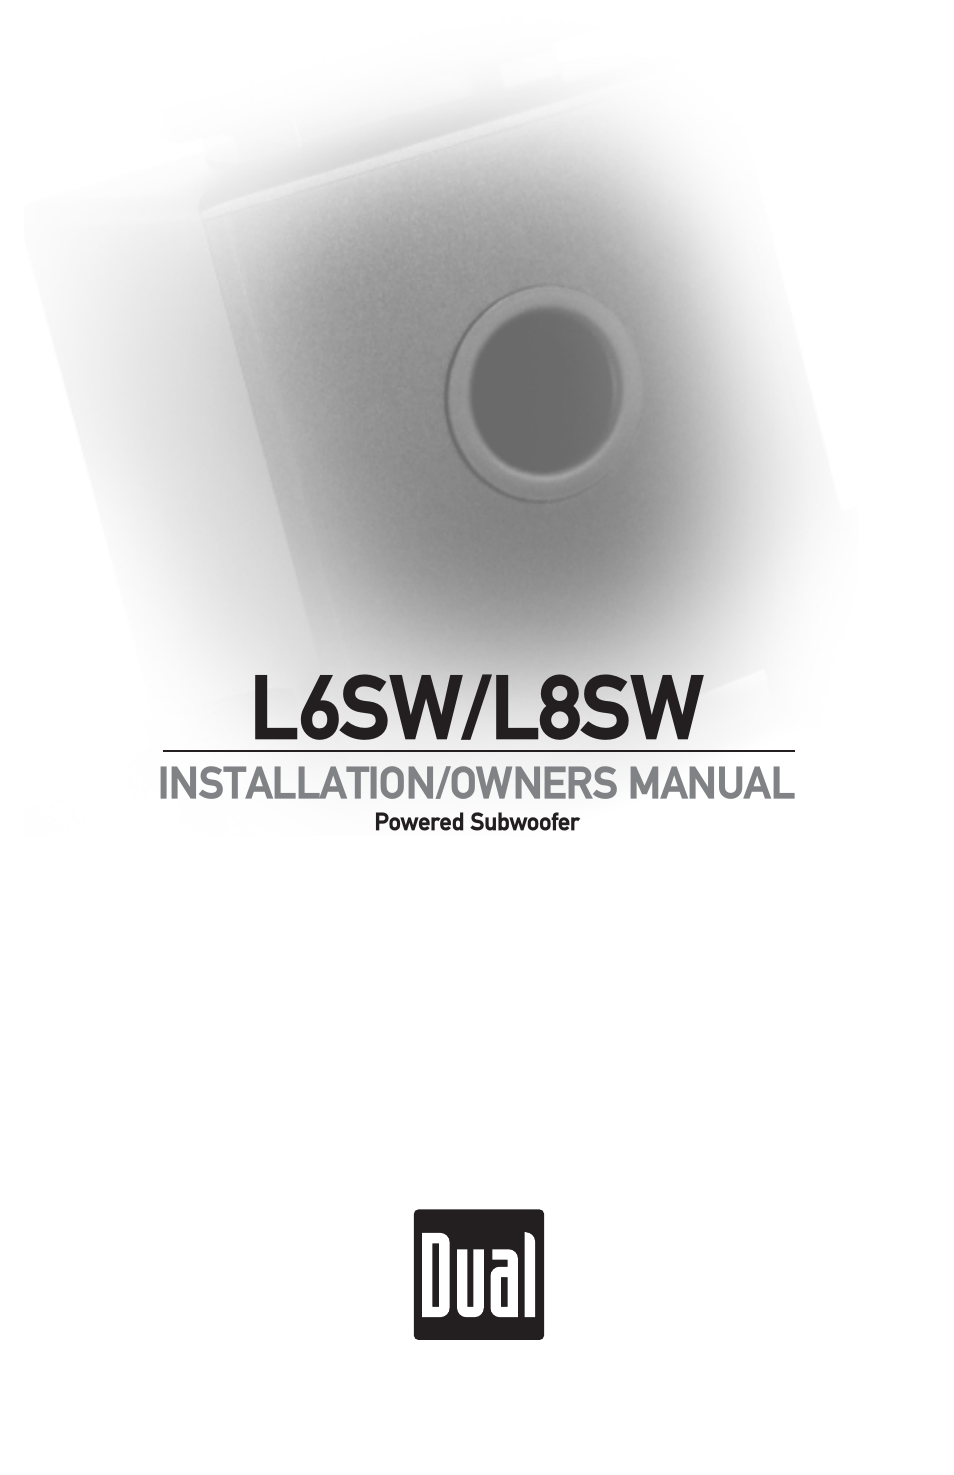 L6SW